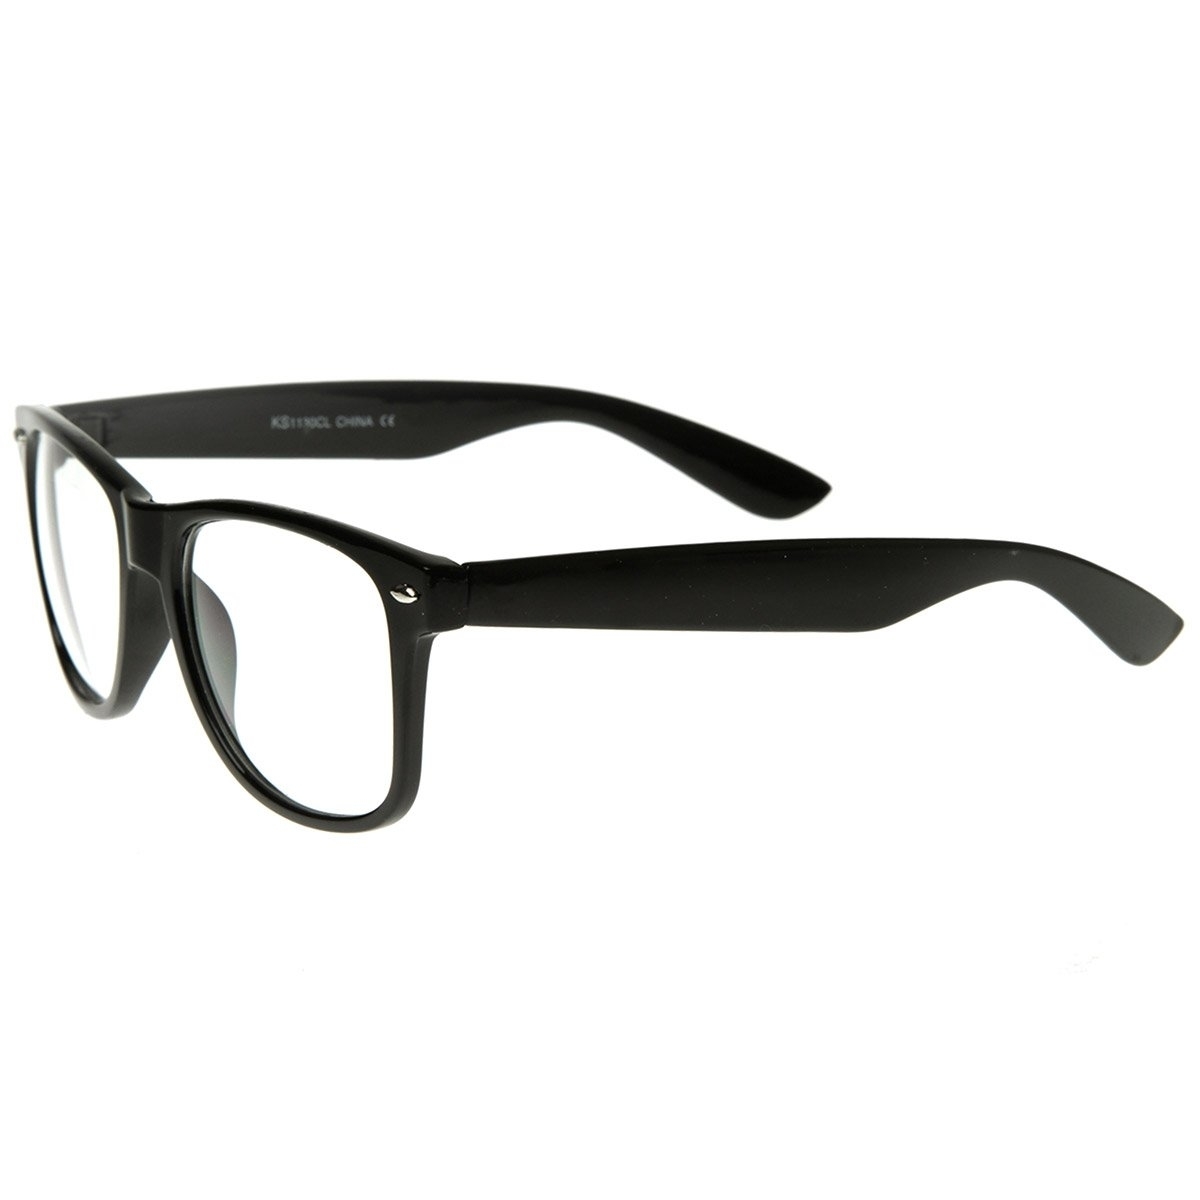 Standard Retro Clear Lens Nerd Geek Assorted Color Horn Rimmed Glasses - Black